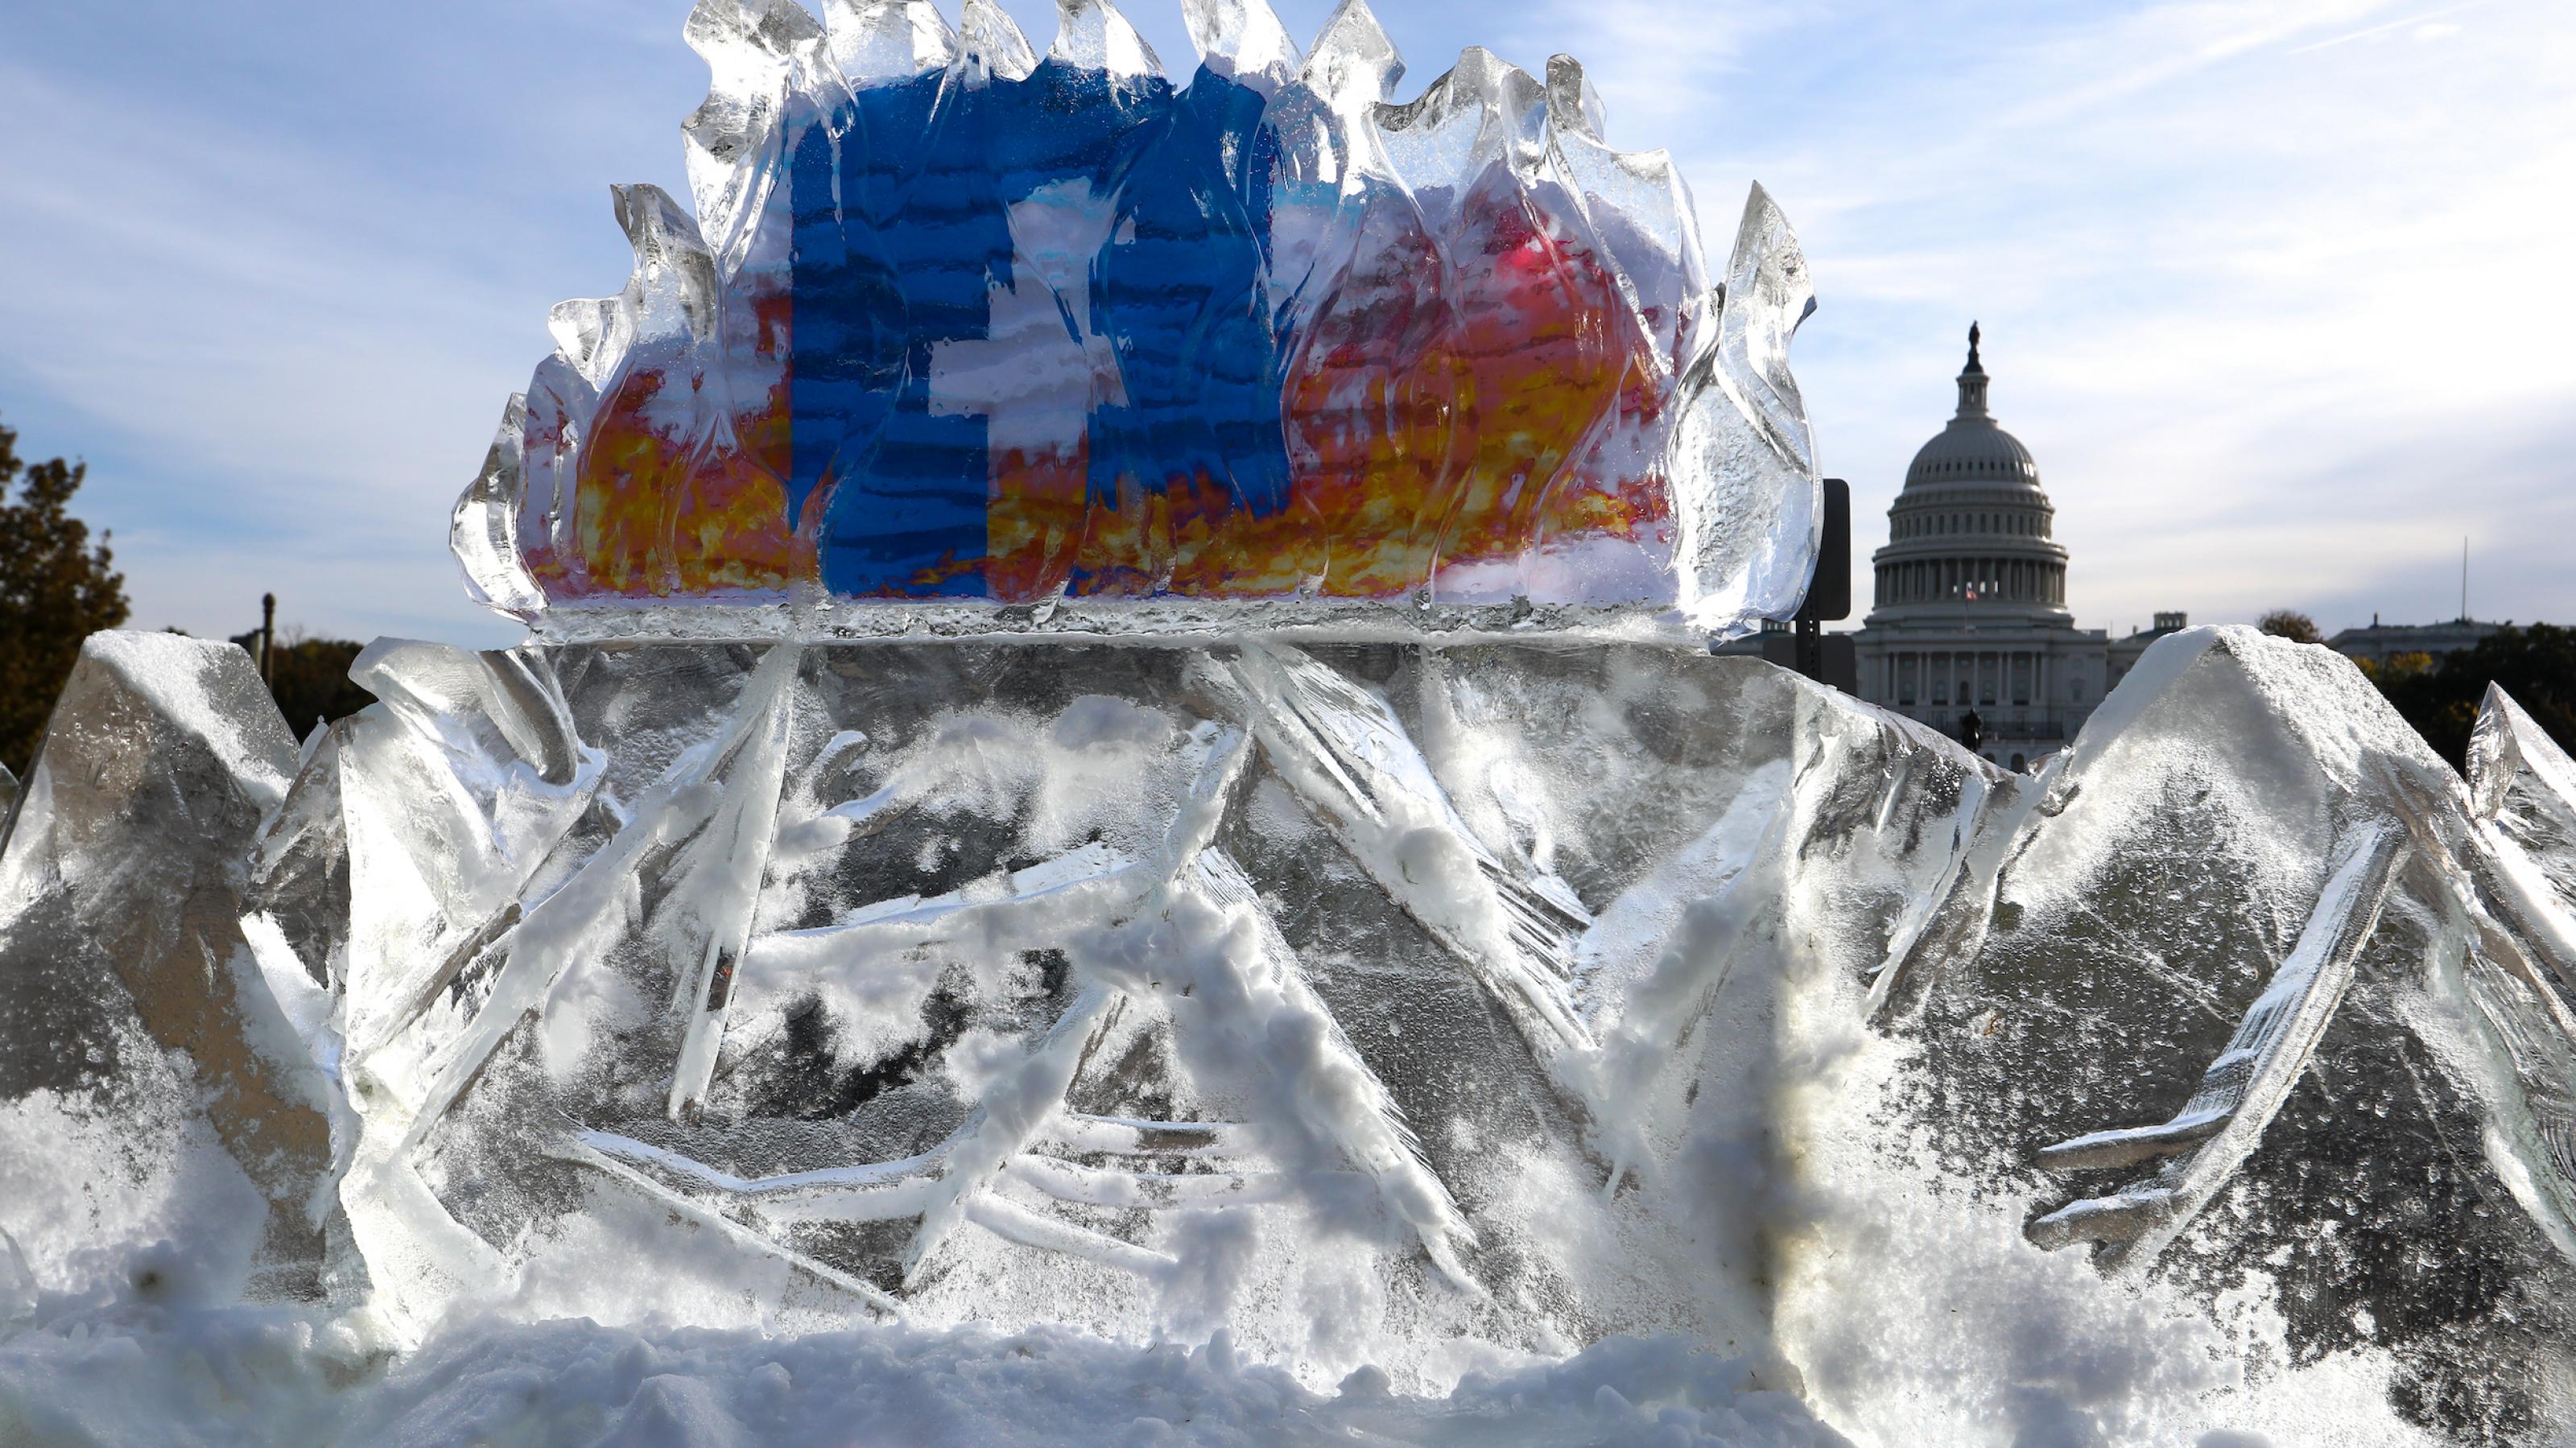 Klimaaktivisten bringen Anfang November 2021 einen 5000 Pfund schweren Eisberg vor dem Kapitol in Washington D.C. zum Schmelzen, um gegen die Rolle von Facebook bei der Verbreitung von Klima-Fehlinformationen zu protestieren. Foto: picture alliance / Anadolu Agency | Yasin Ozturk